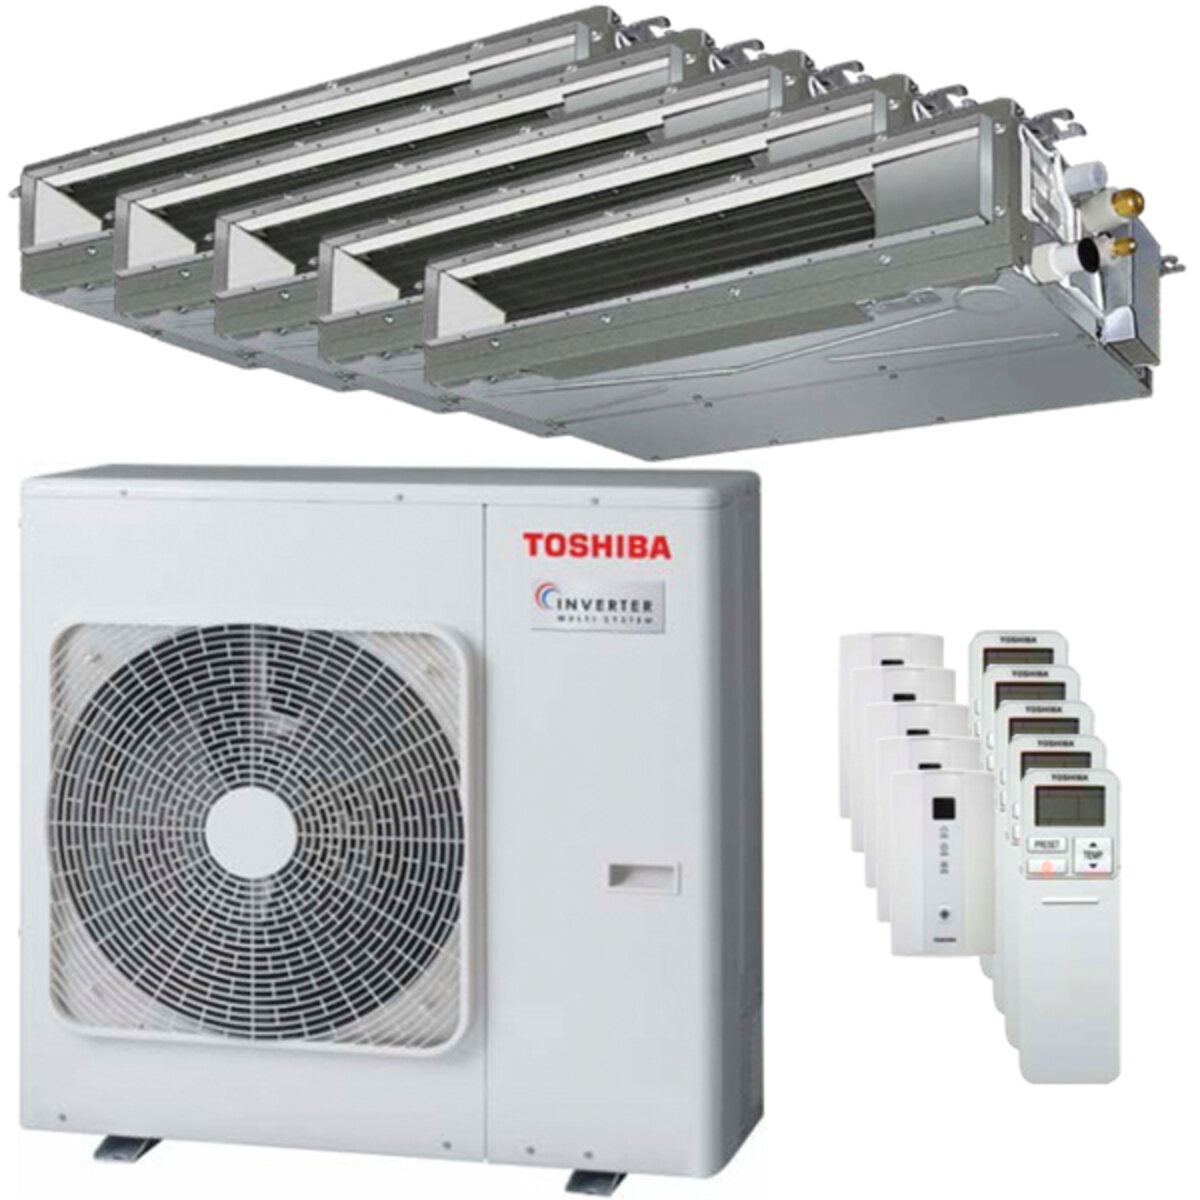 Toshiba Ductable Air Conditioner U2 penta split 7000 + 9000 + 9000 + 9000 + 16000 BTU inverter A++ unité extérieure 10,0 kW